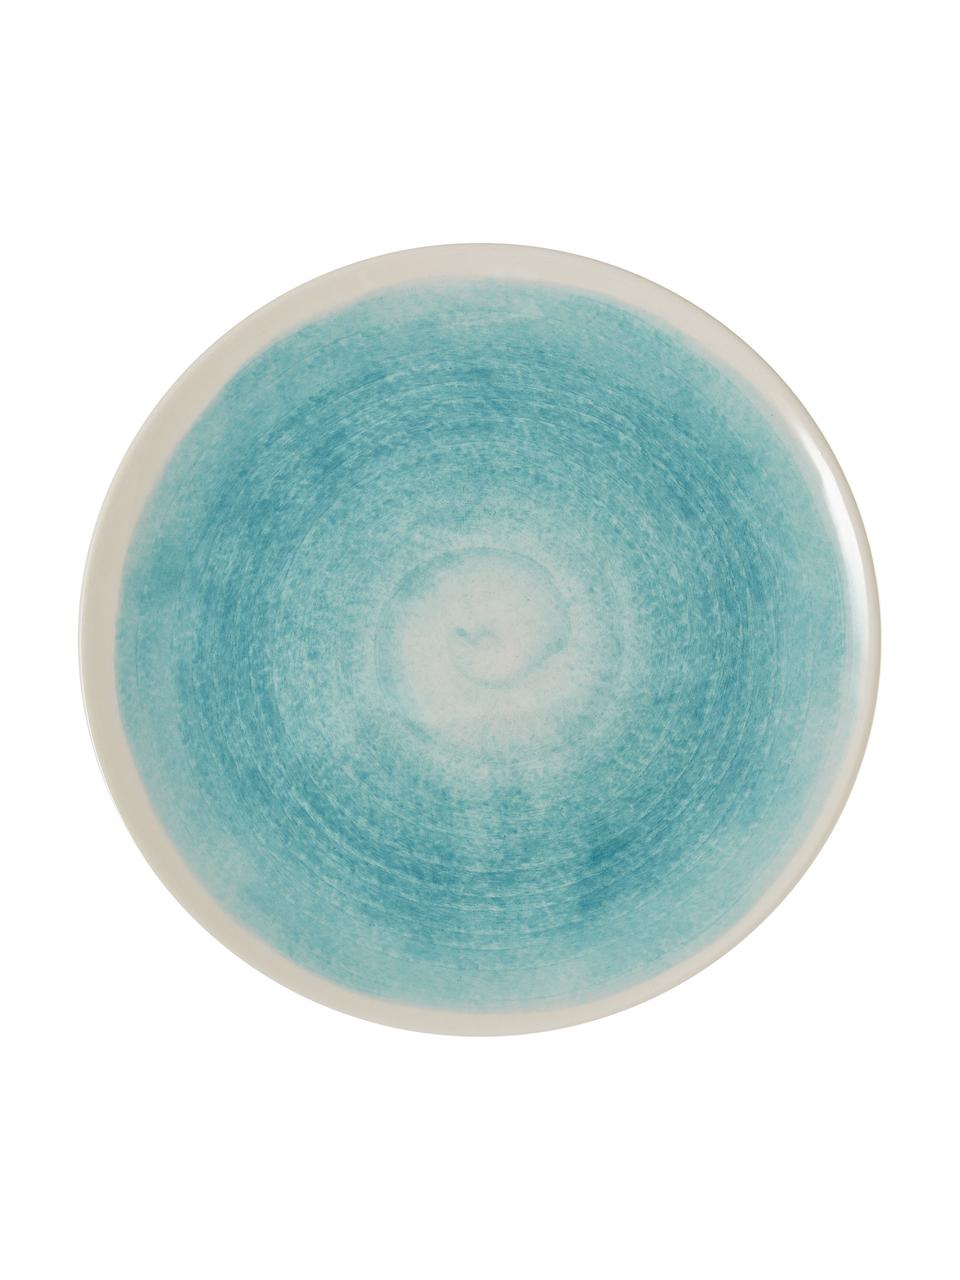 Platos llanos artesanales Pure, 6 uds., Cerámica, Azul, blanco, Ø 26 cm